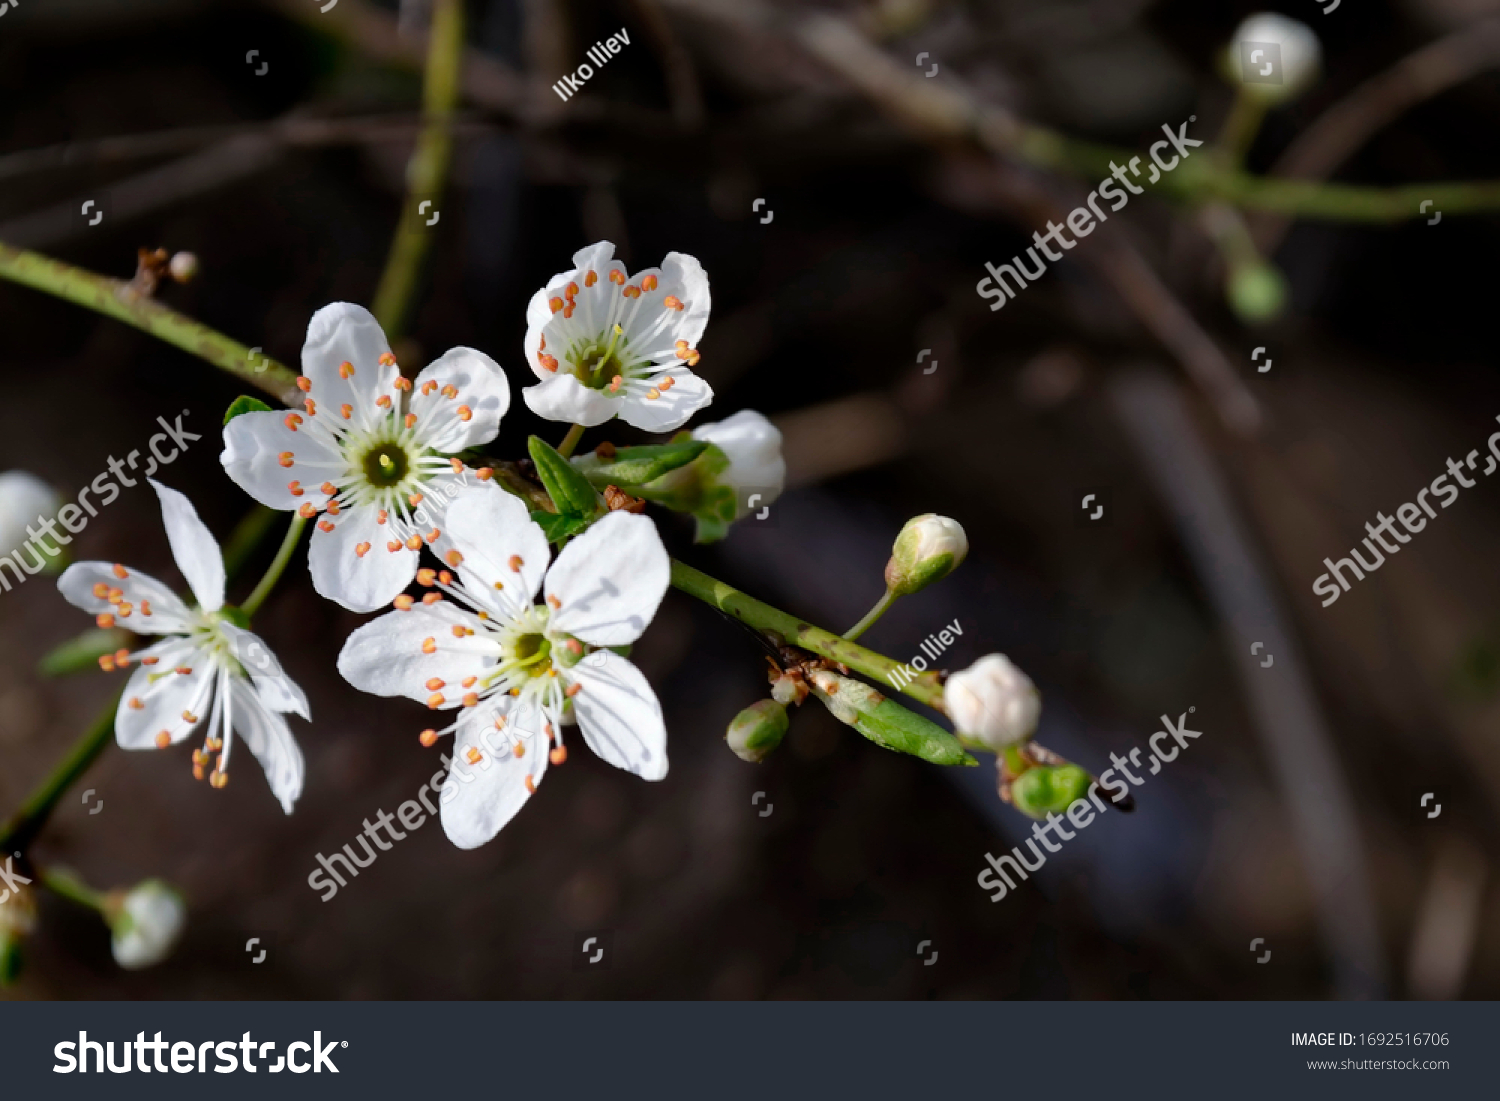 Flowering trees in spring, Bulgaria #1692516706